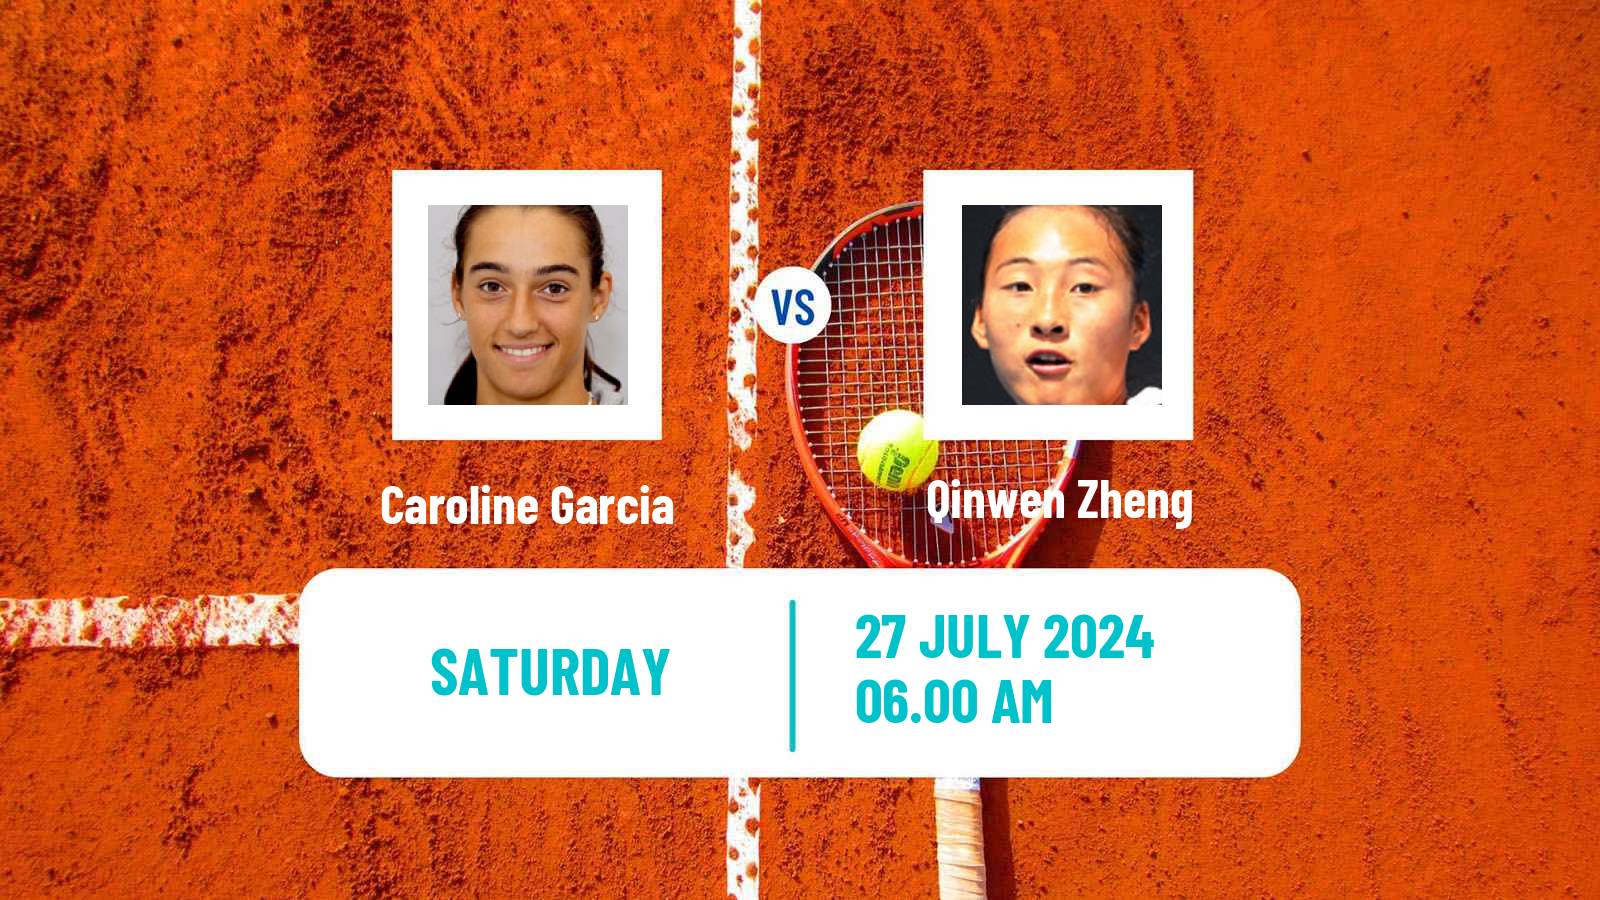 Tennis WTA Olympic Games Caroline Garcia - Qinwen Zheng